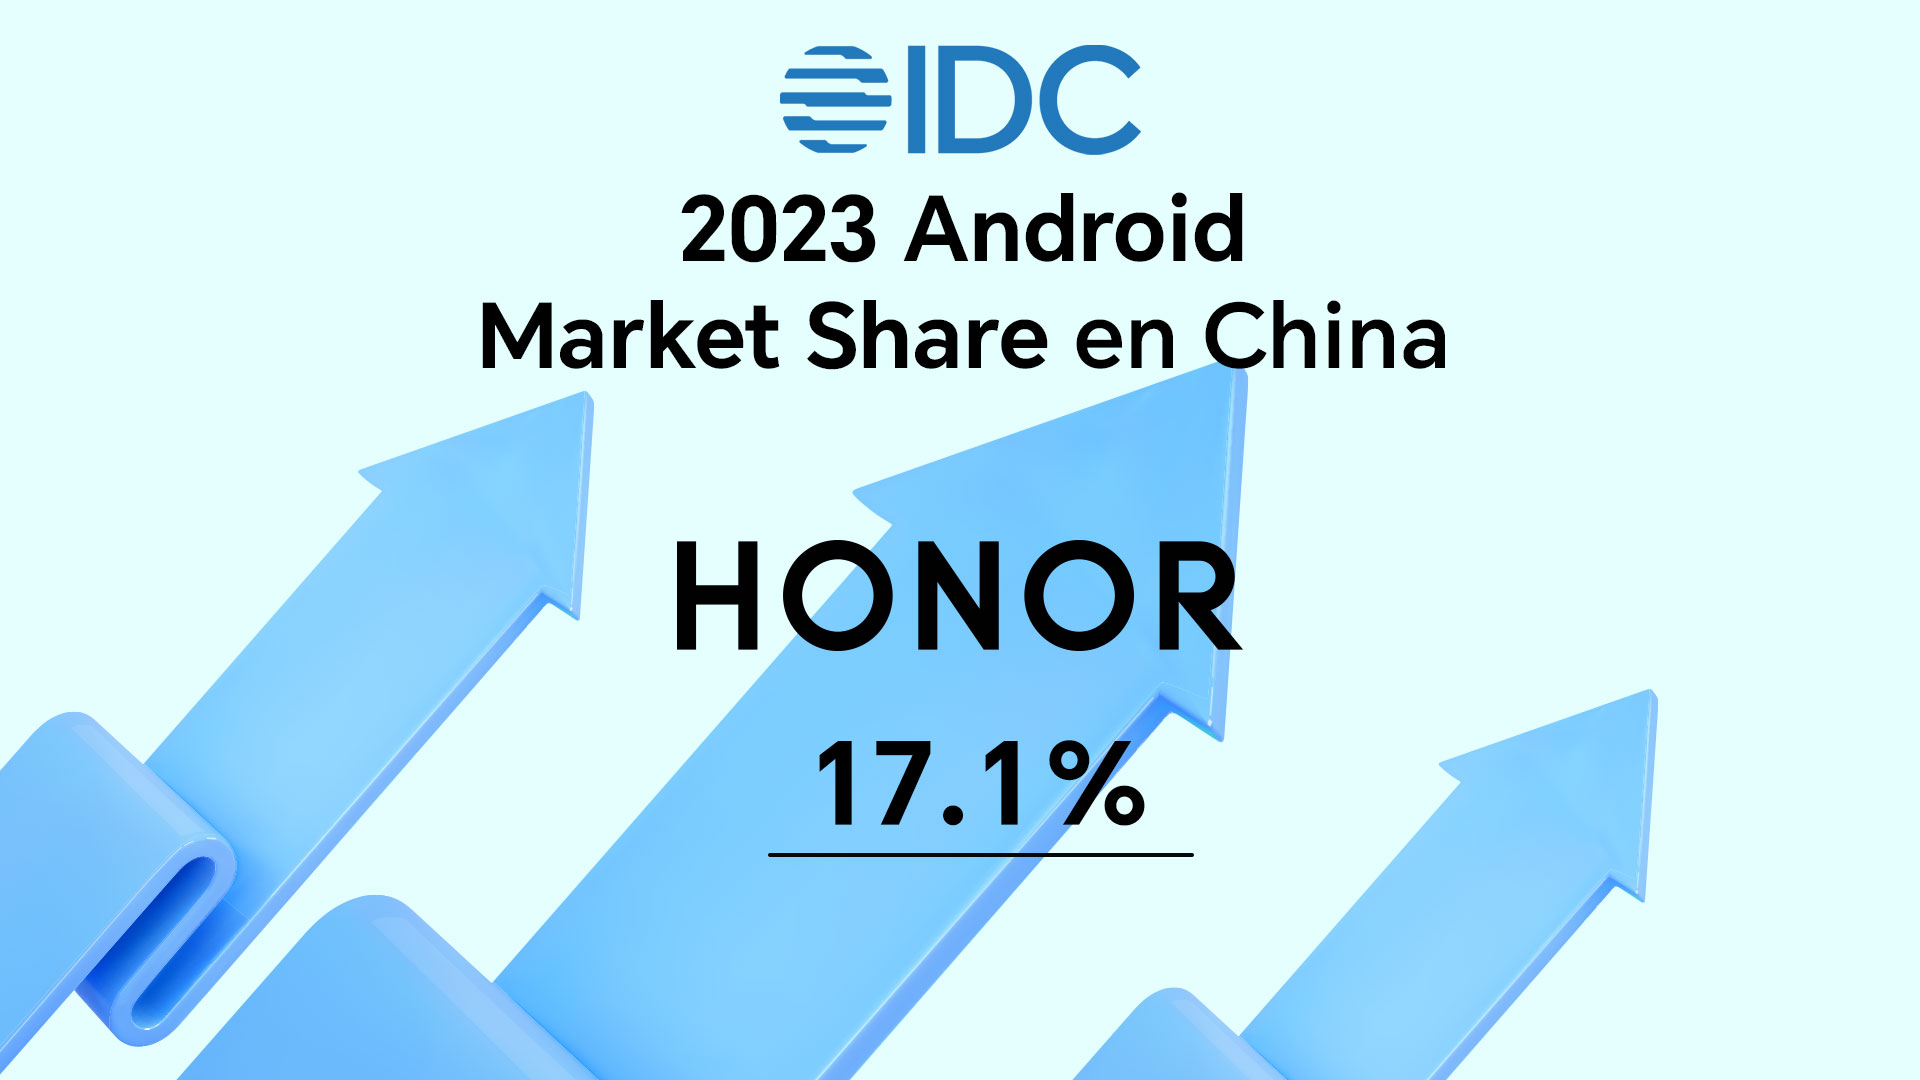 Foto de HONOR lideró el mercado chino de smartphones Android en 2023